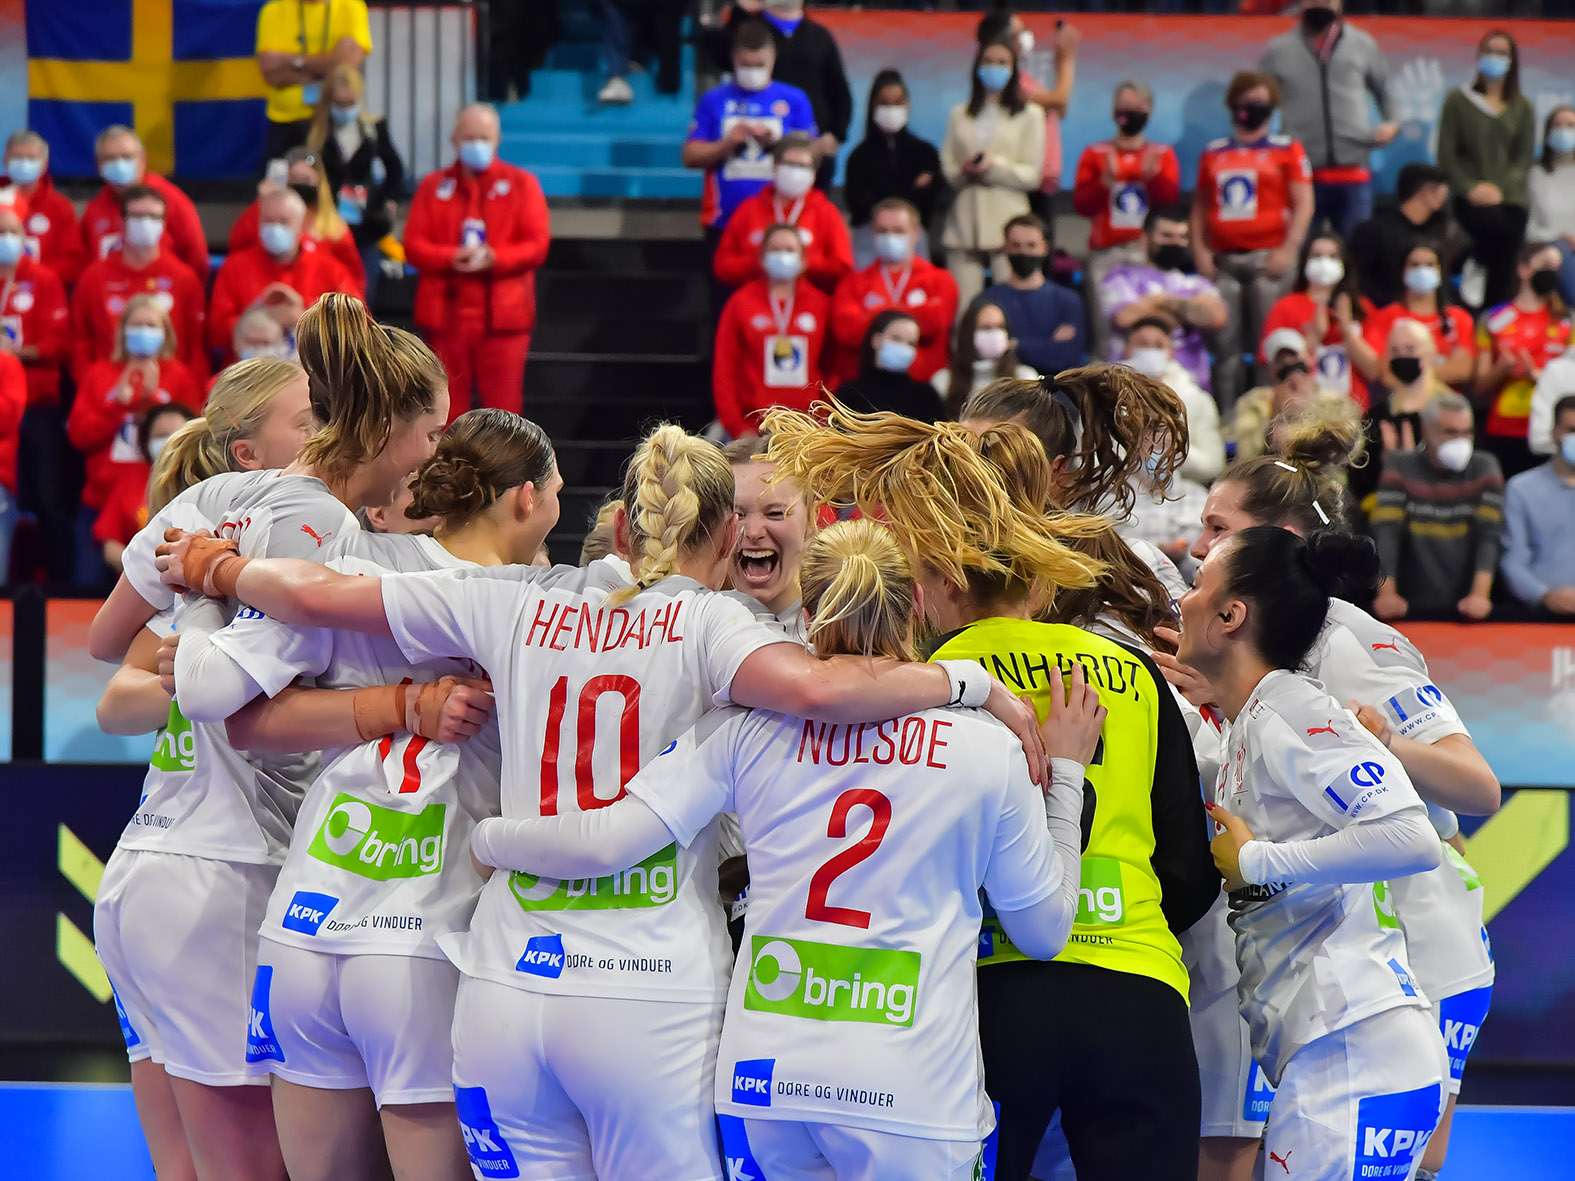 Noruega es el campeón del Mundial de Handball Femenino | Canal Showsport